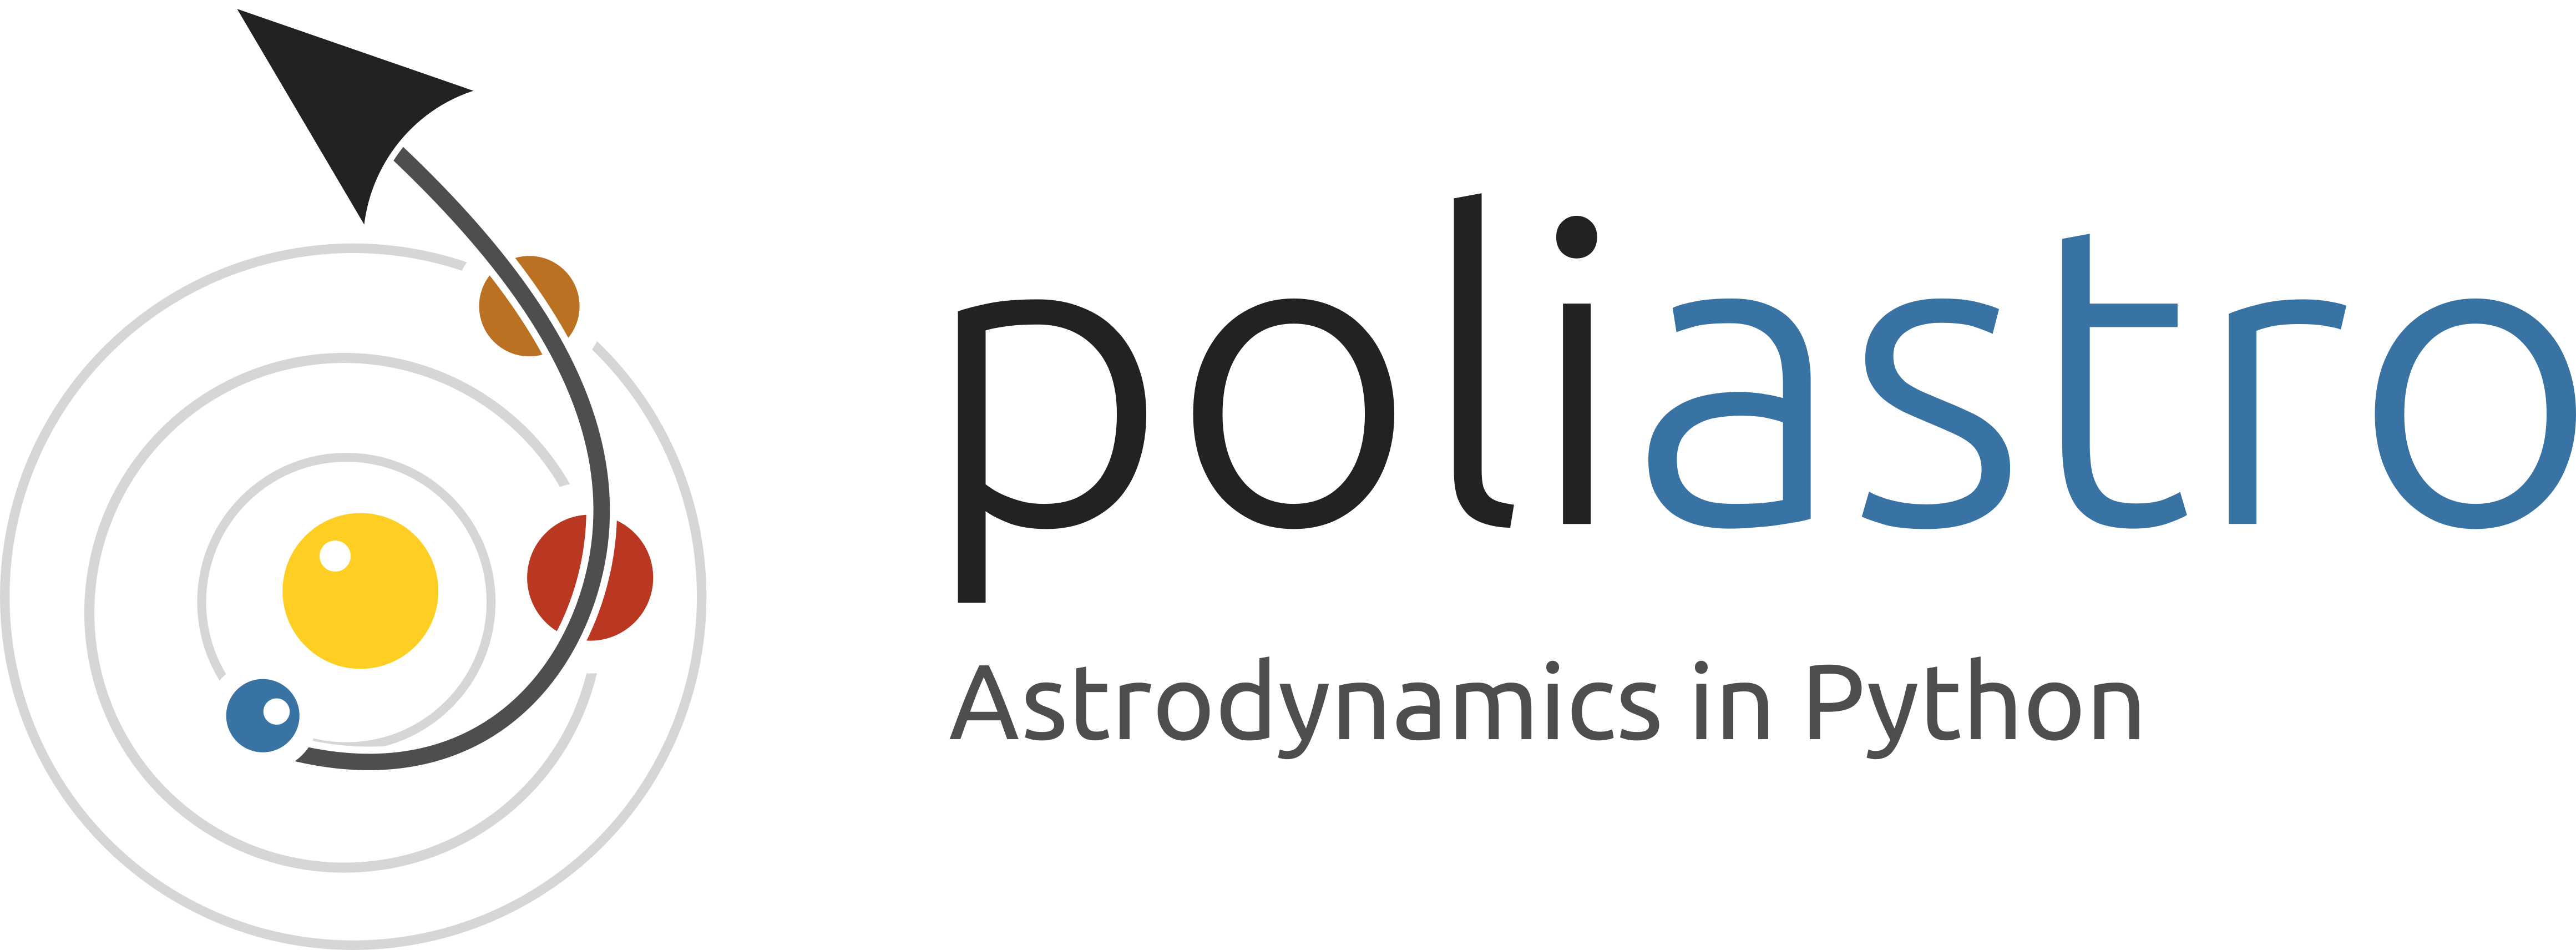 poliastro Logo